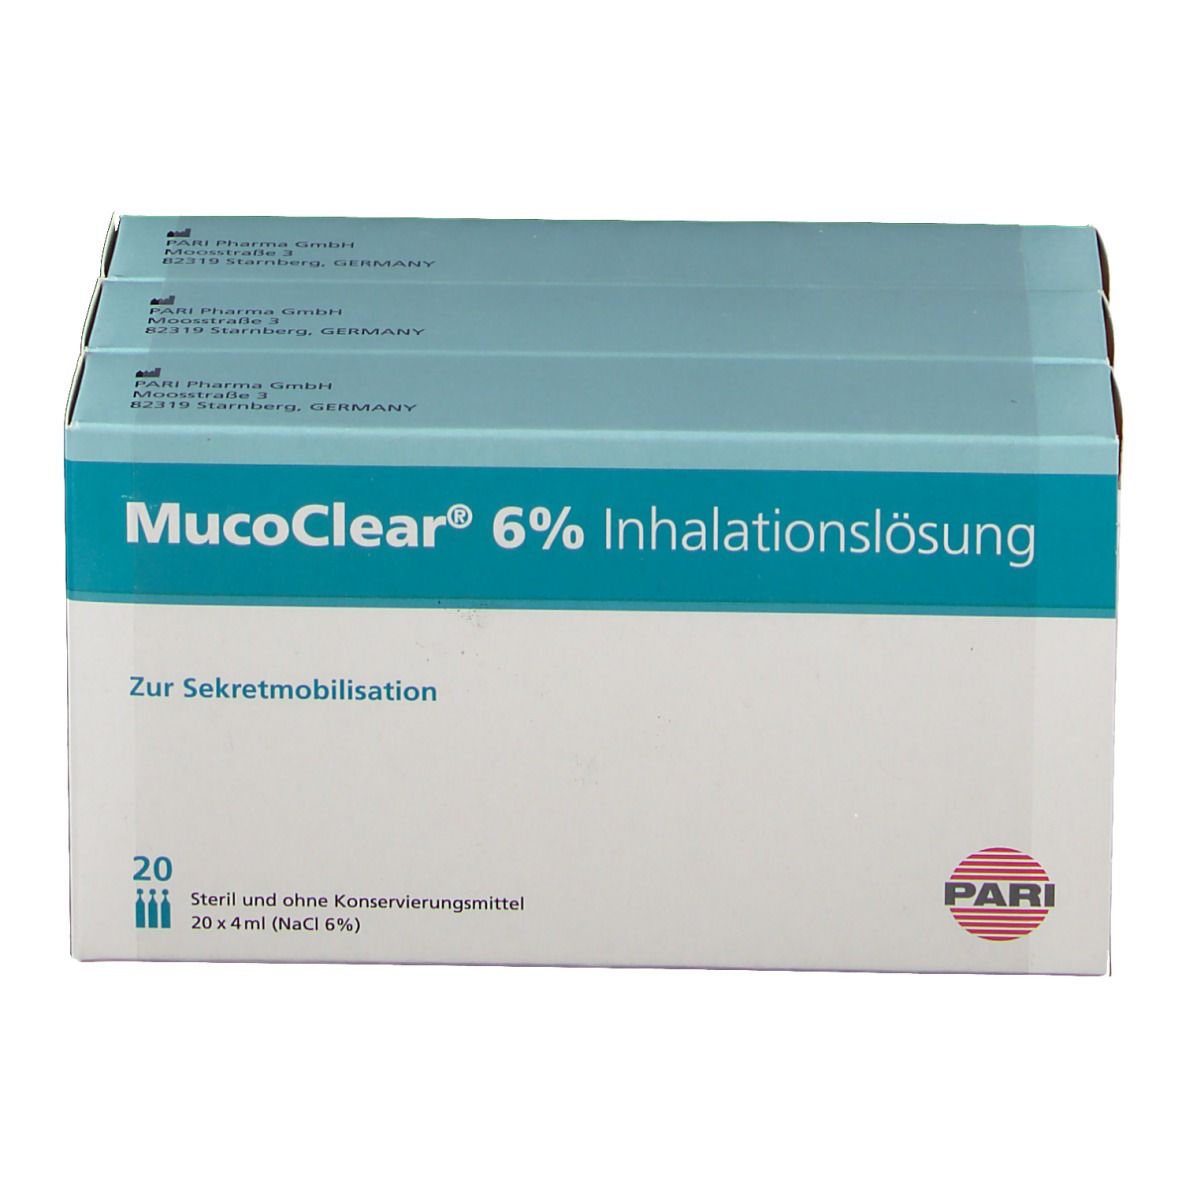 MucoClear 6%® Inhalationslösung